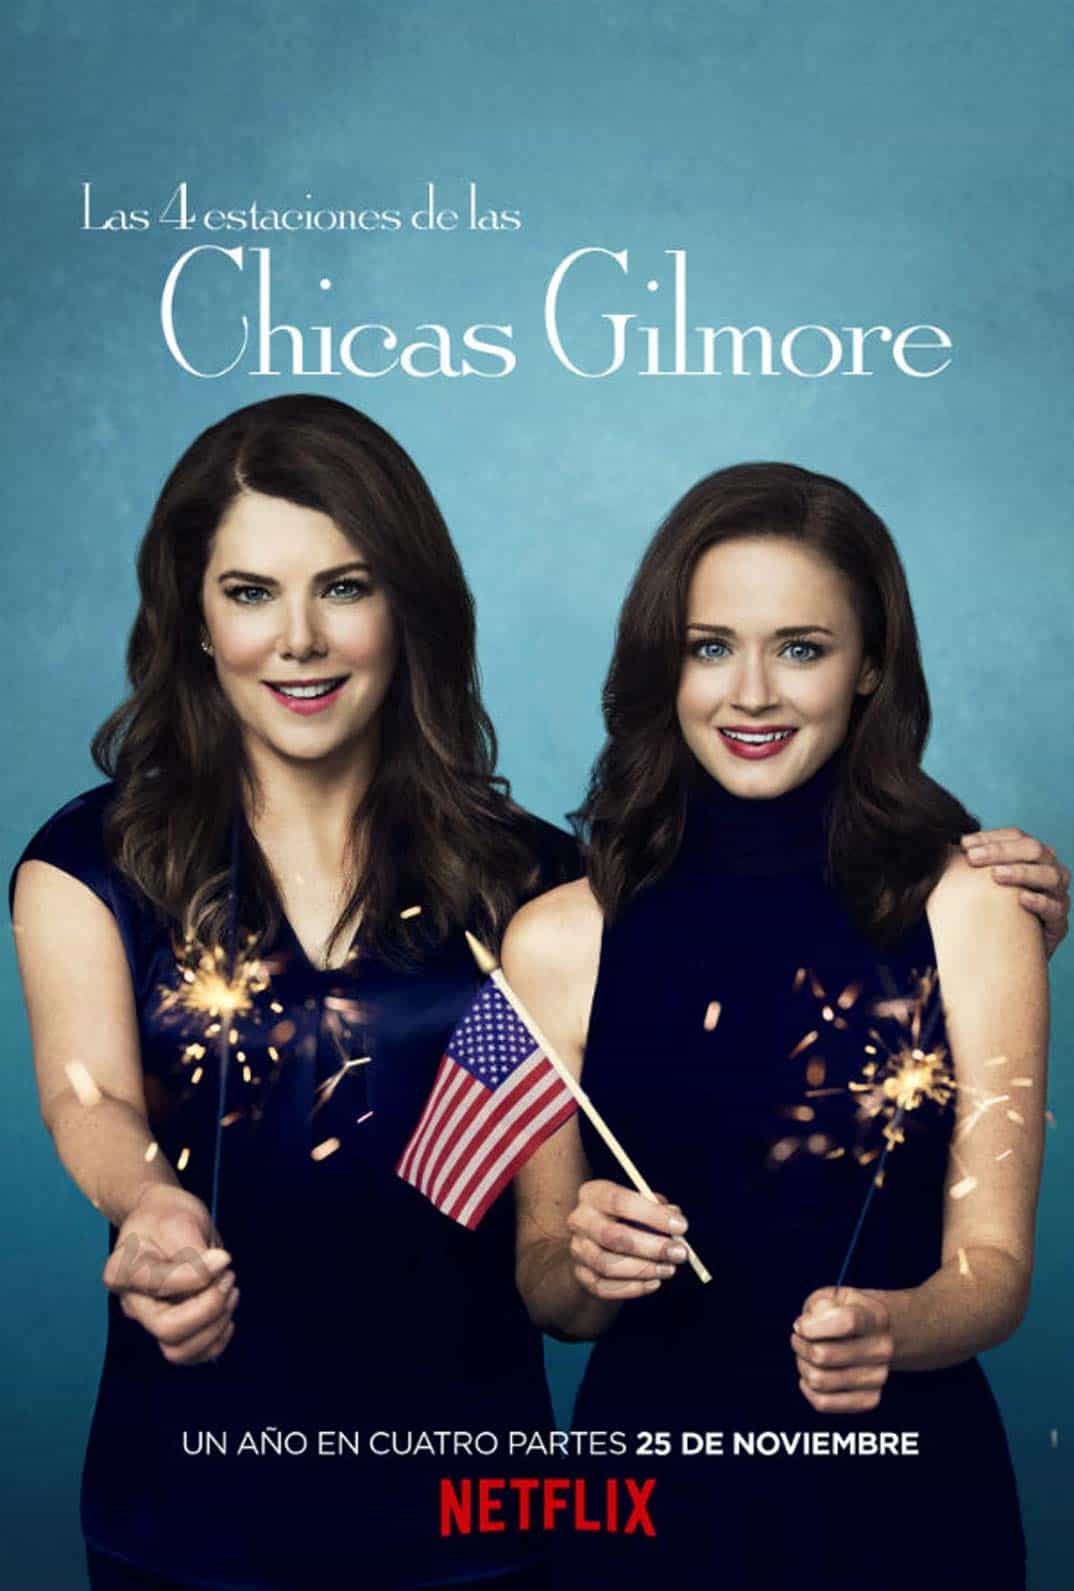 Las chicas Gilmore © Netflix